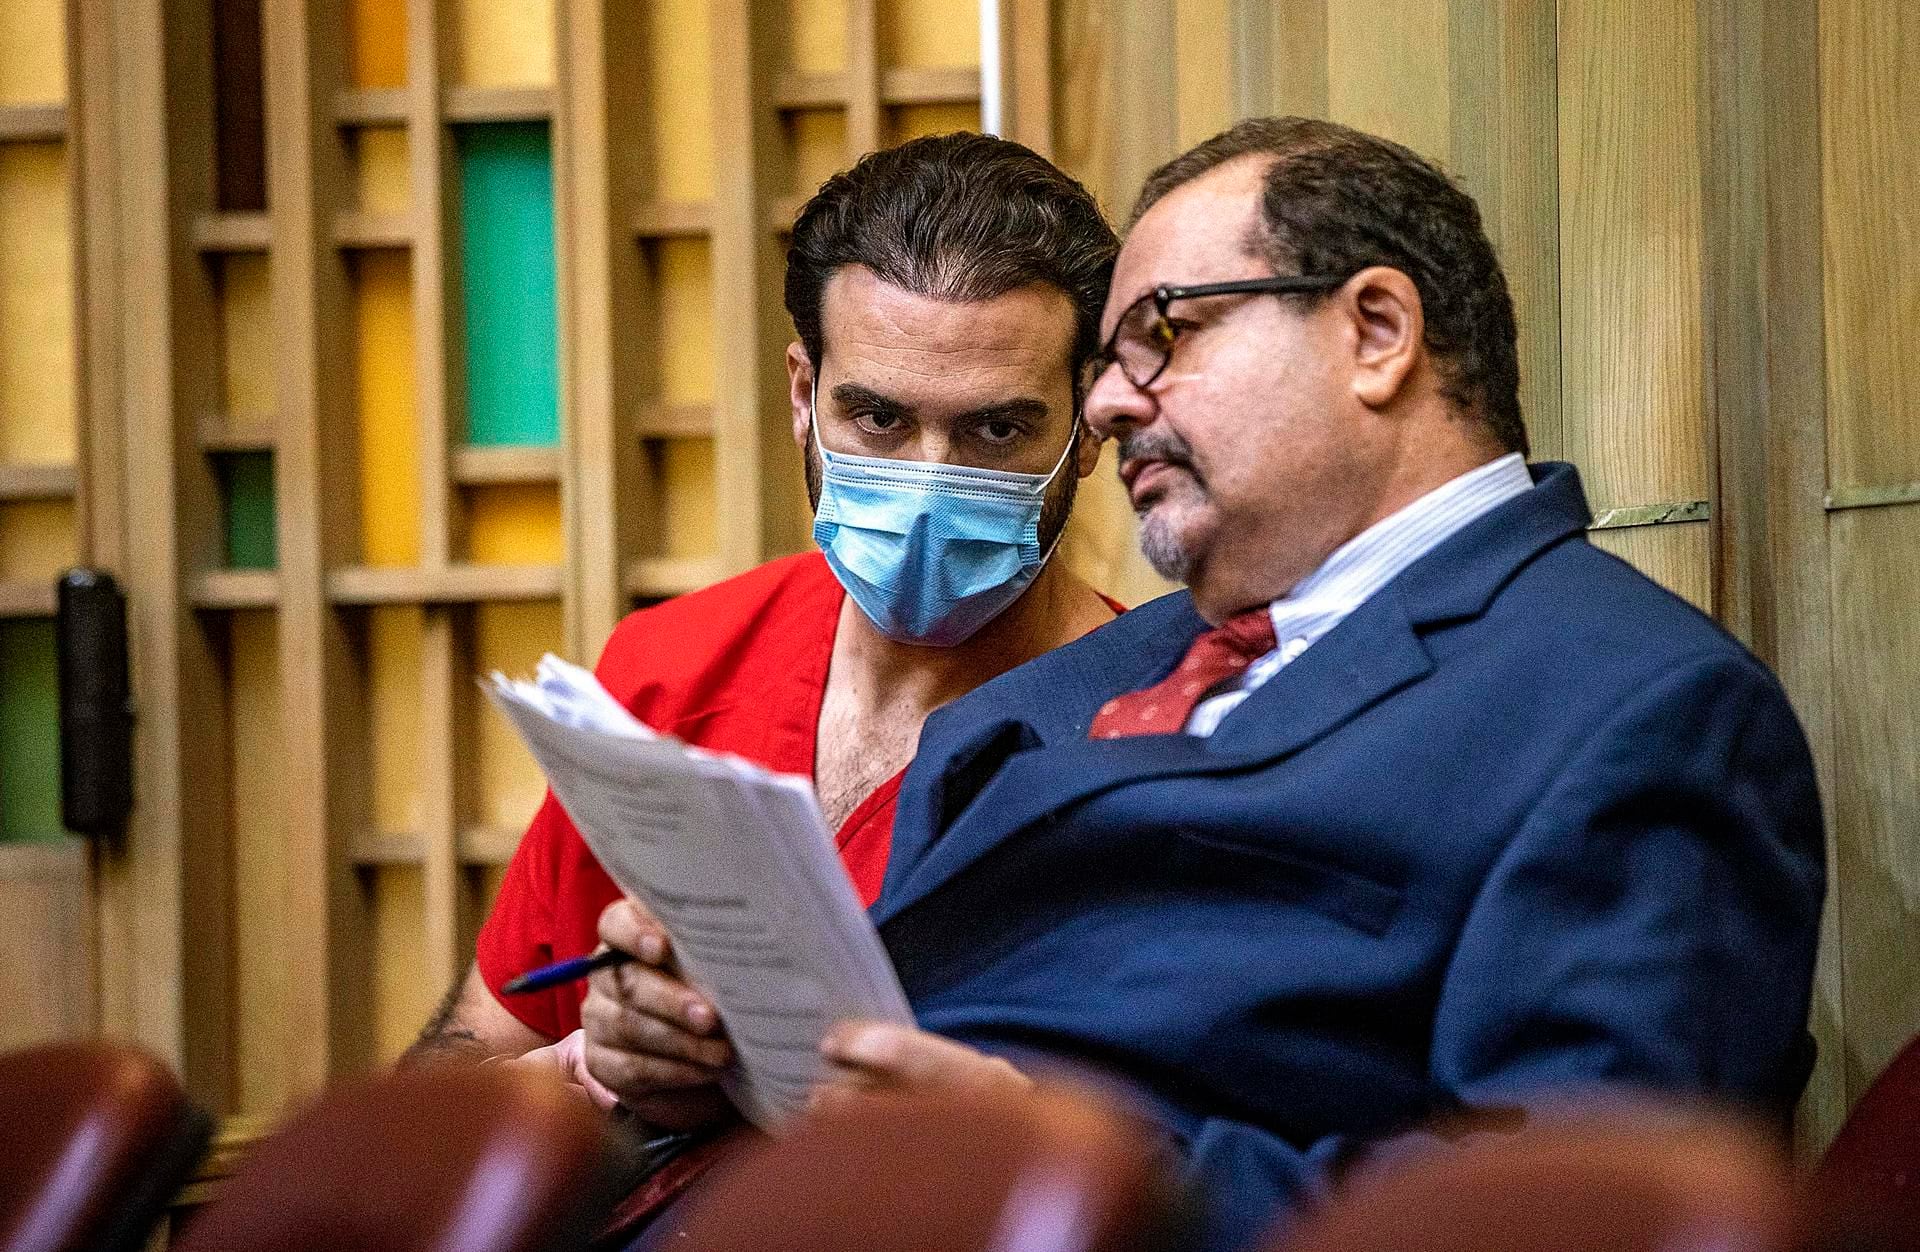 El actor mexicano Pablo Lyle escucha a su abogado Phil Reizenstein (d), durante una audiencia, en una fotografía de archivo. EFE/Pedro Portal Miami Herald/Pool
